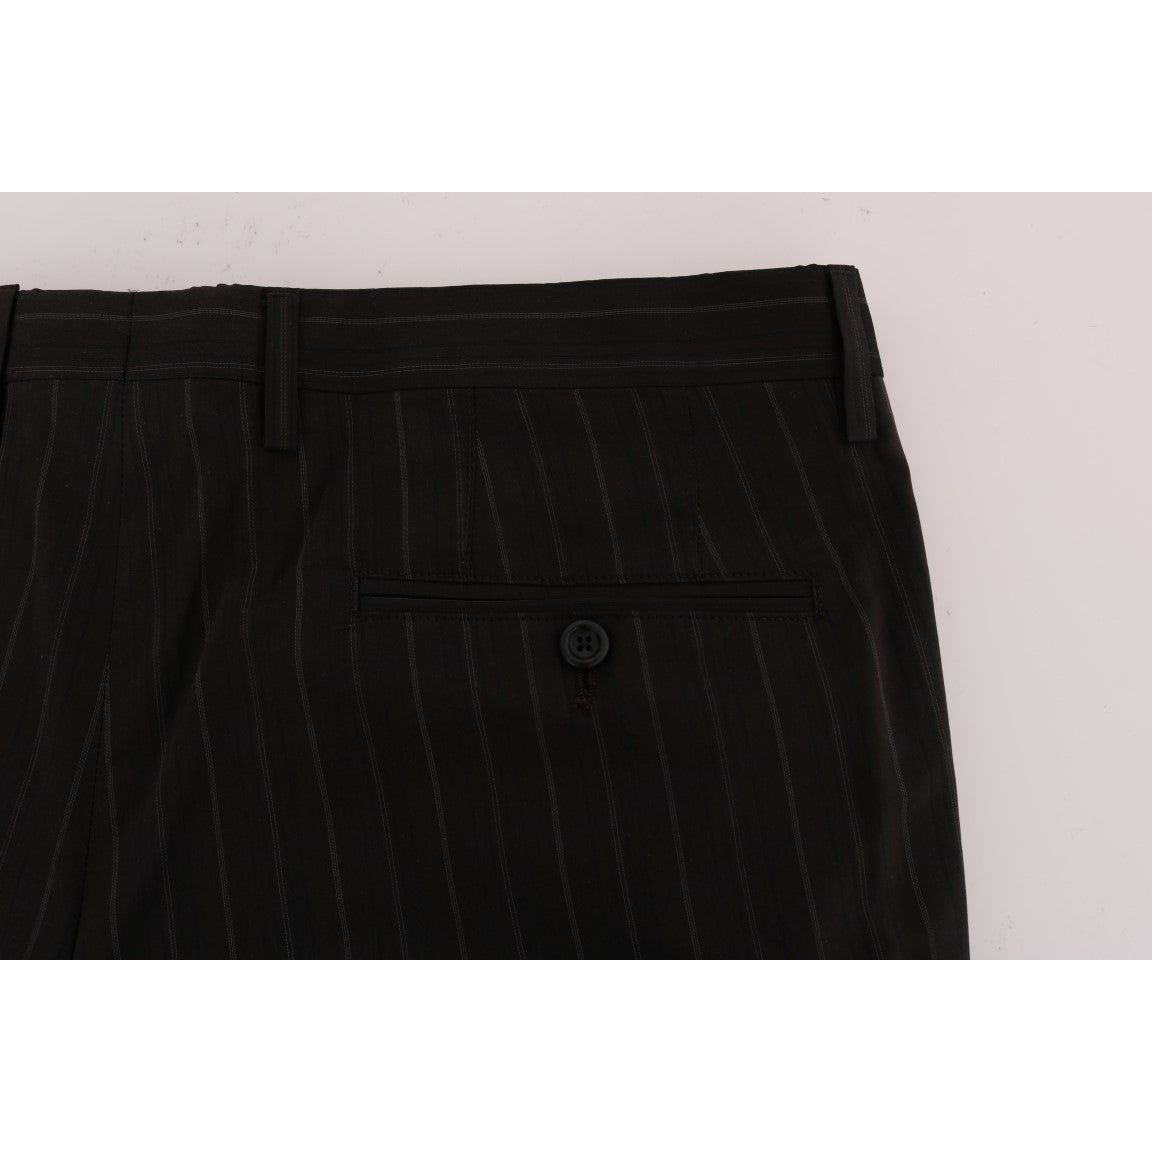 Dolce & Gabbana Elegant Brown Striped Dress Trousers brown-striped-cotton-dress-formal-pants